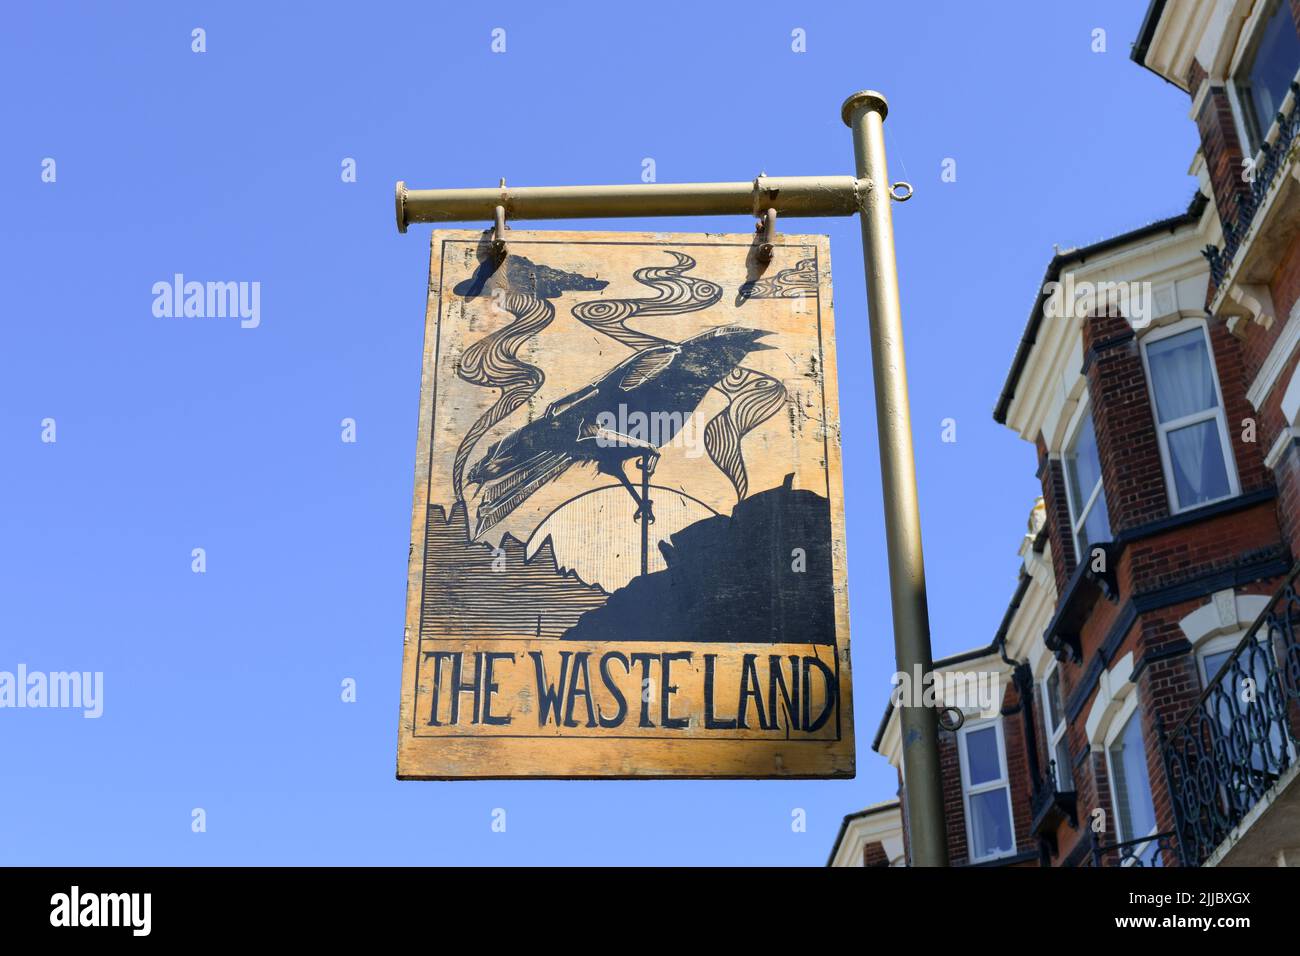 Le panneau de pub de Waste Land, The Albion Rooms, Ciftonville, Margate, Kent, Angleterre, Royaume-Uni Banque D'Images